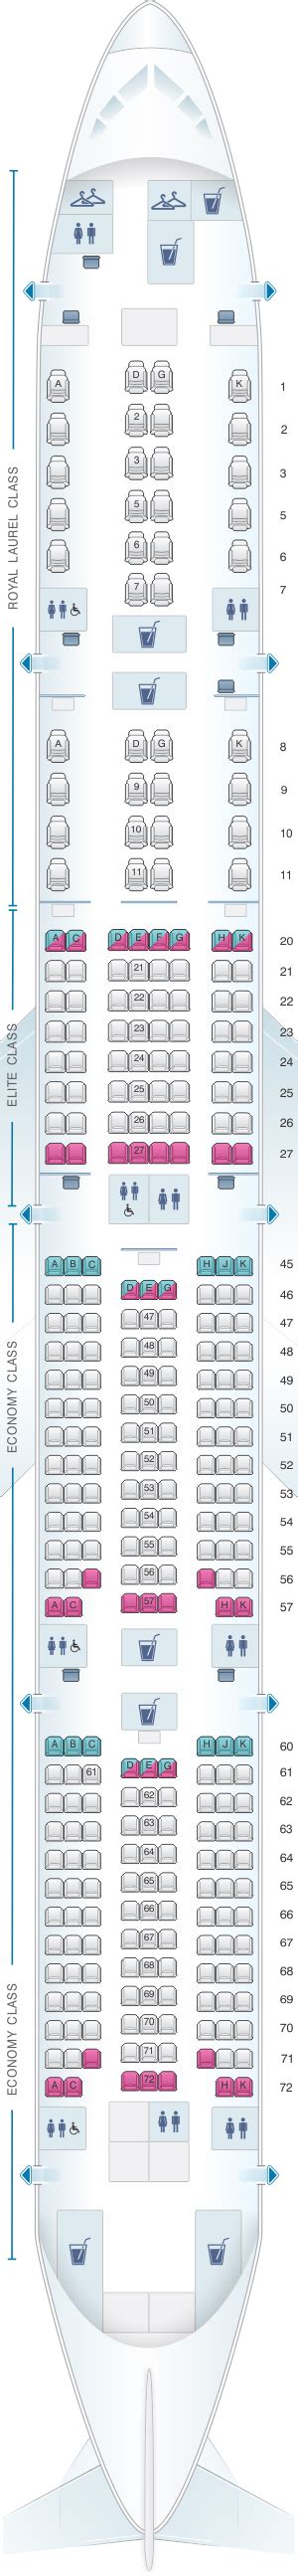 Eva Airlines 777 300er Seat Map